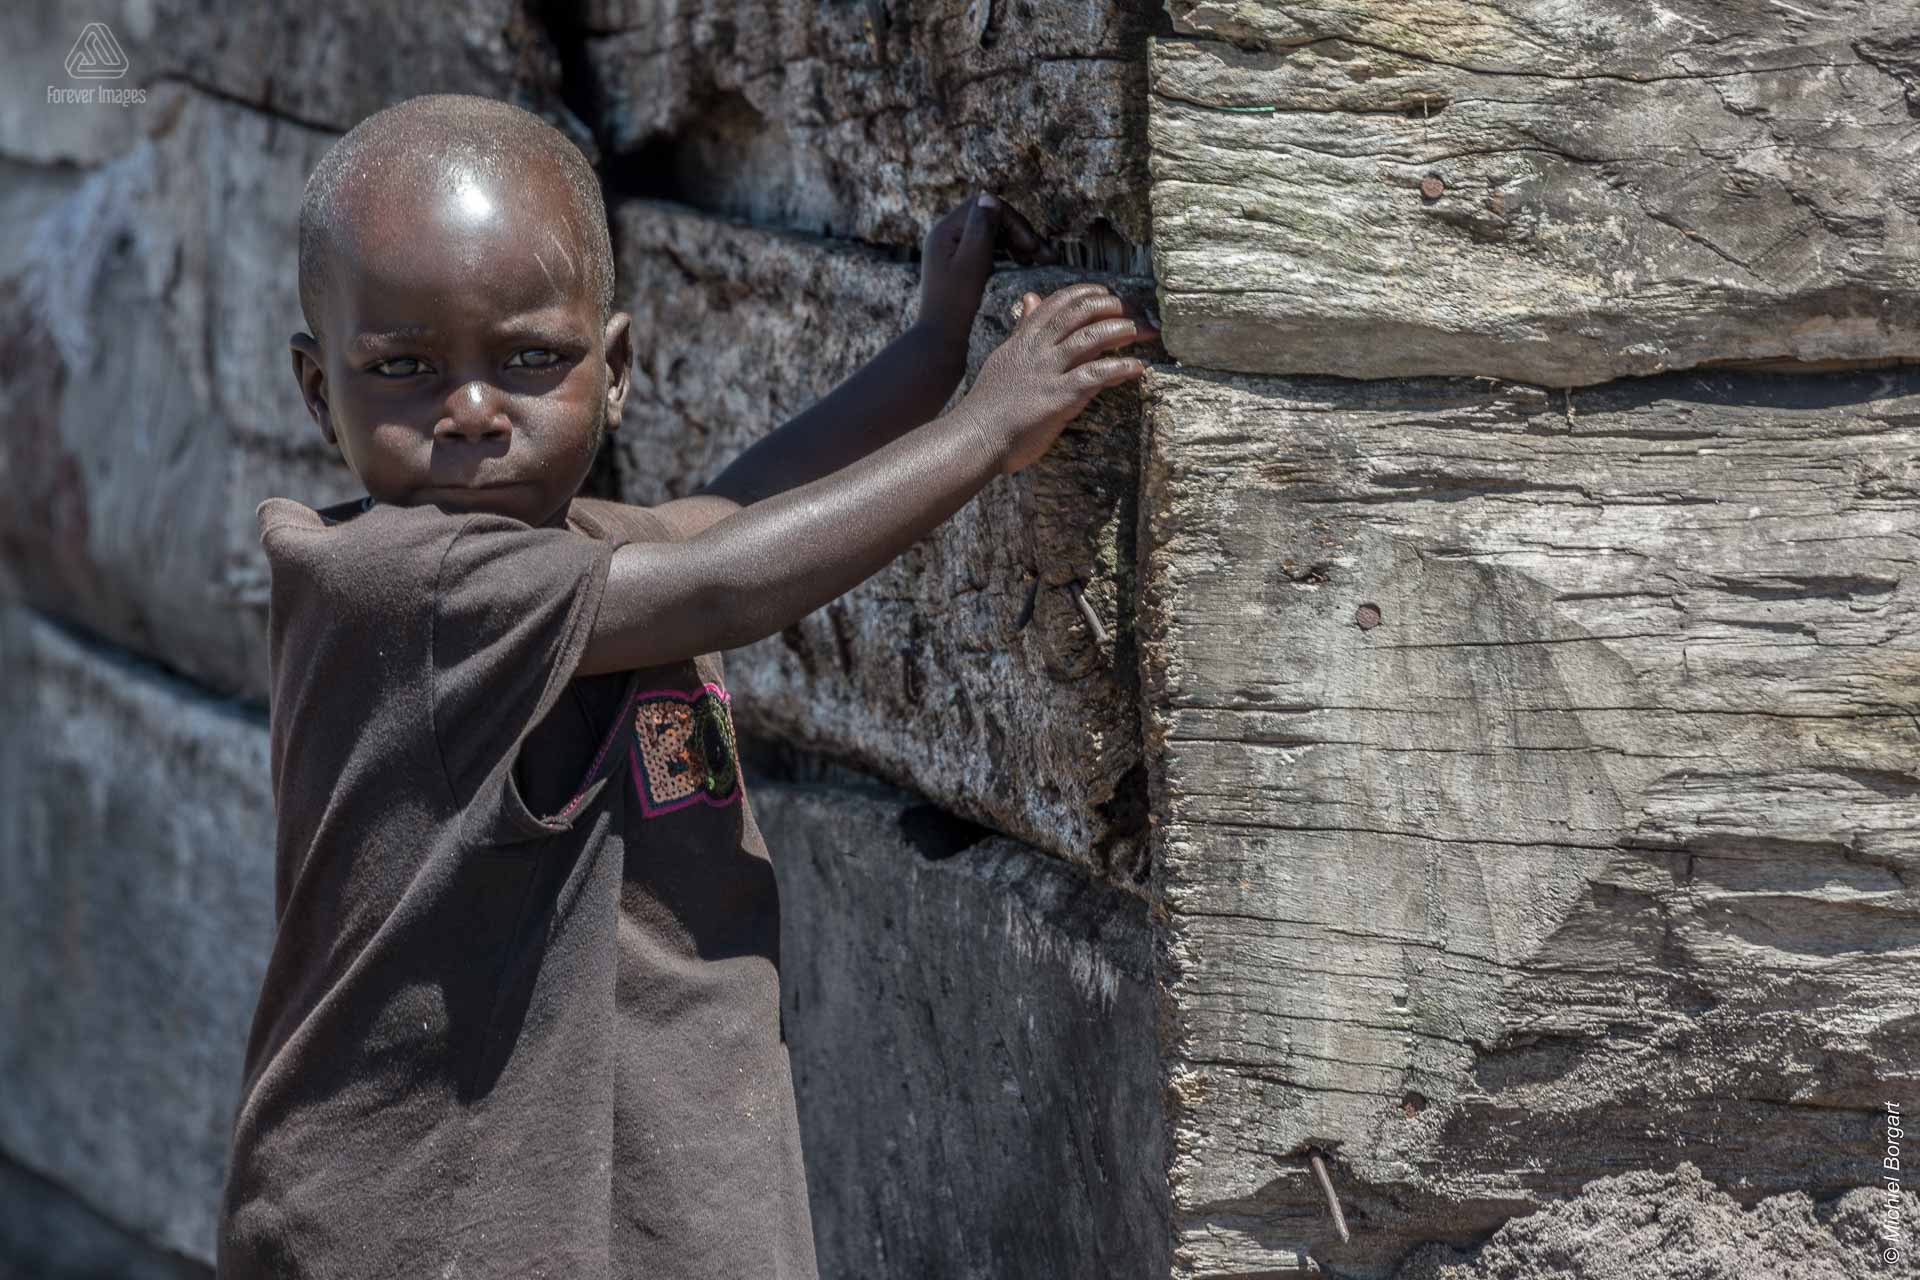 Portretfoto kindje in Oeganda tijdens de Muskathlon van 2015 | Portretfotograaf Michiel Borgart - Forever Images.